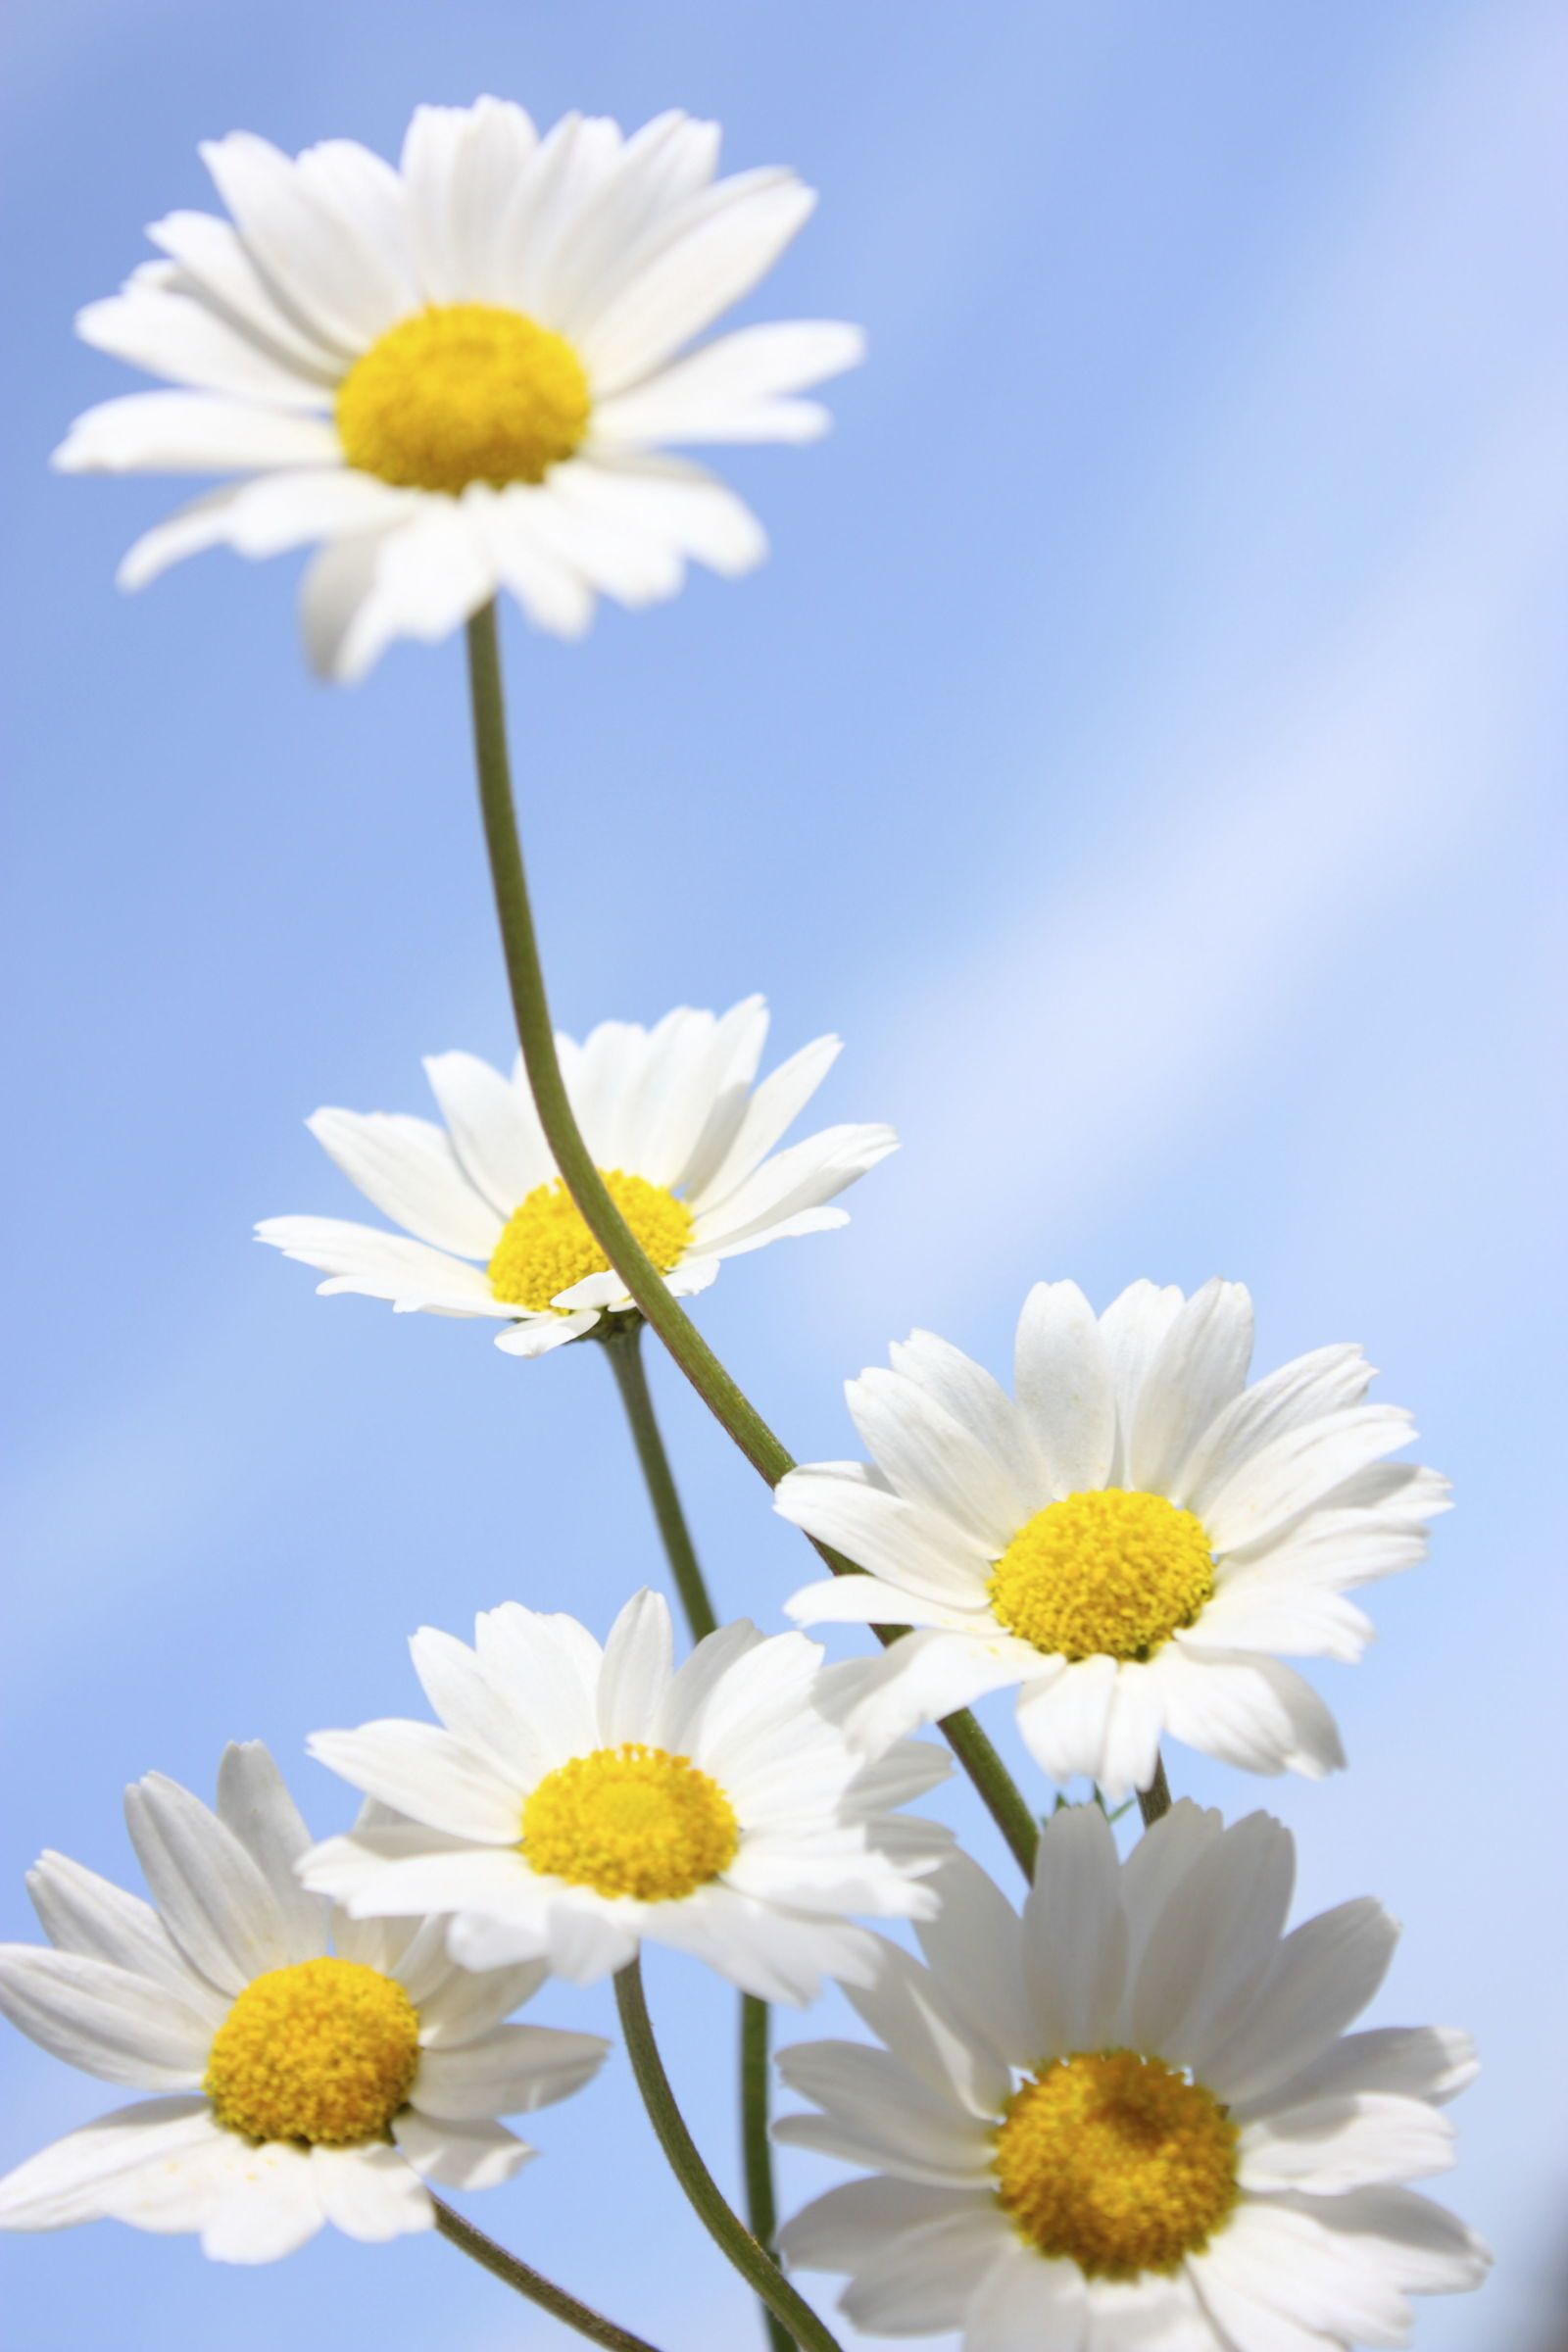 Ảnh hoa cúc họa mi trắng trời xanh tuyệt đẹp